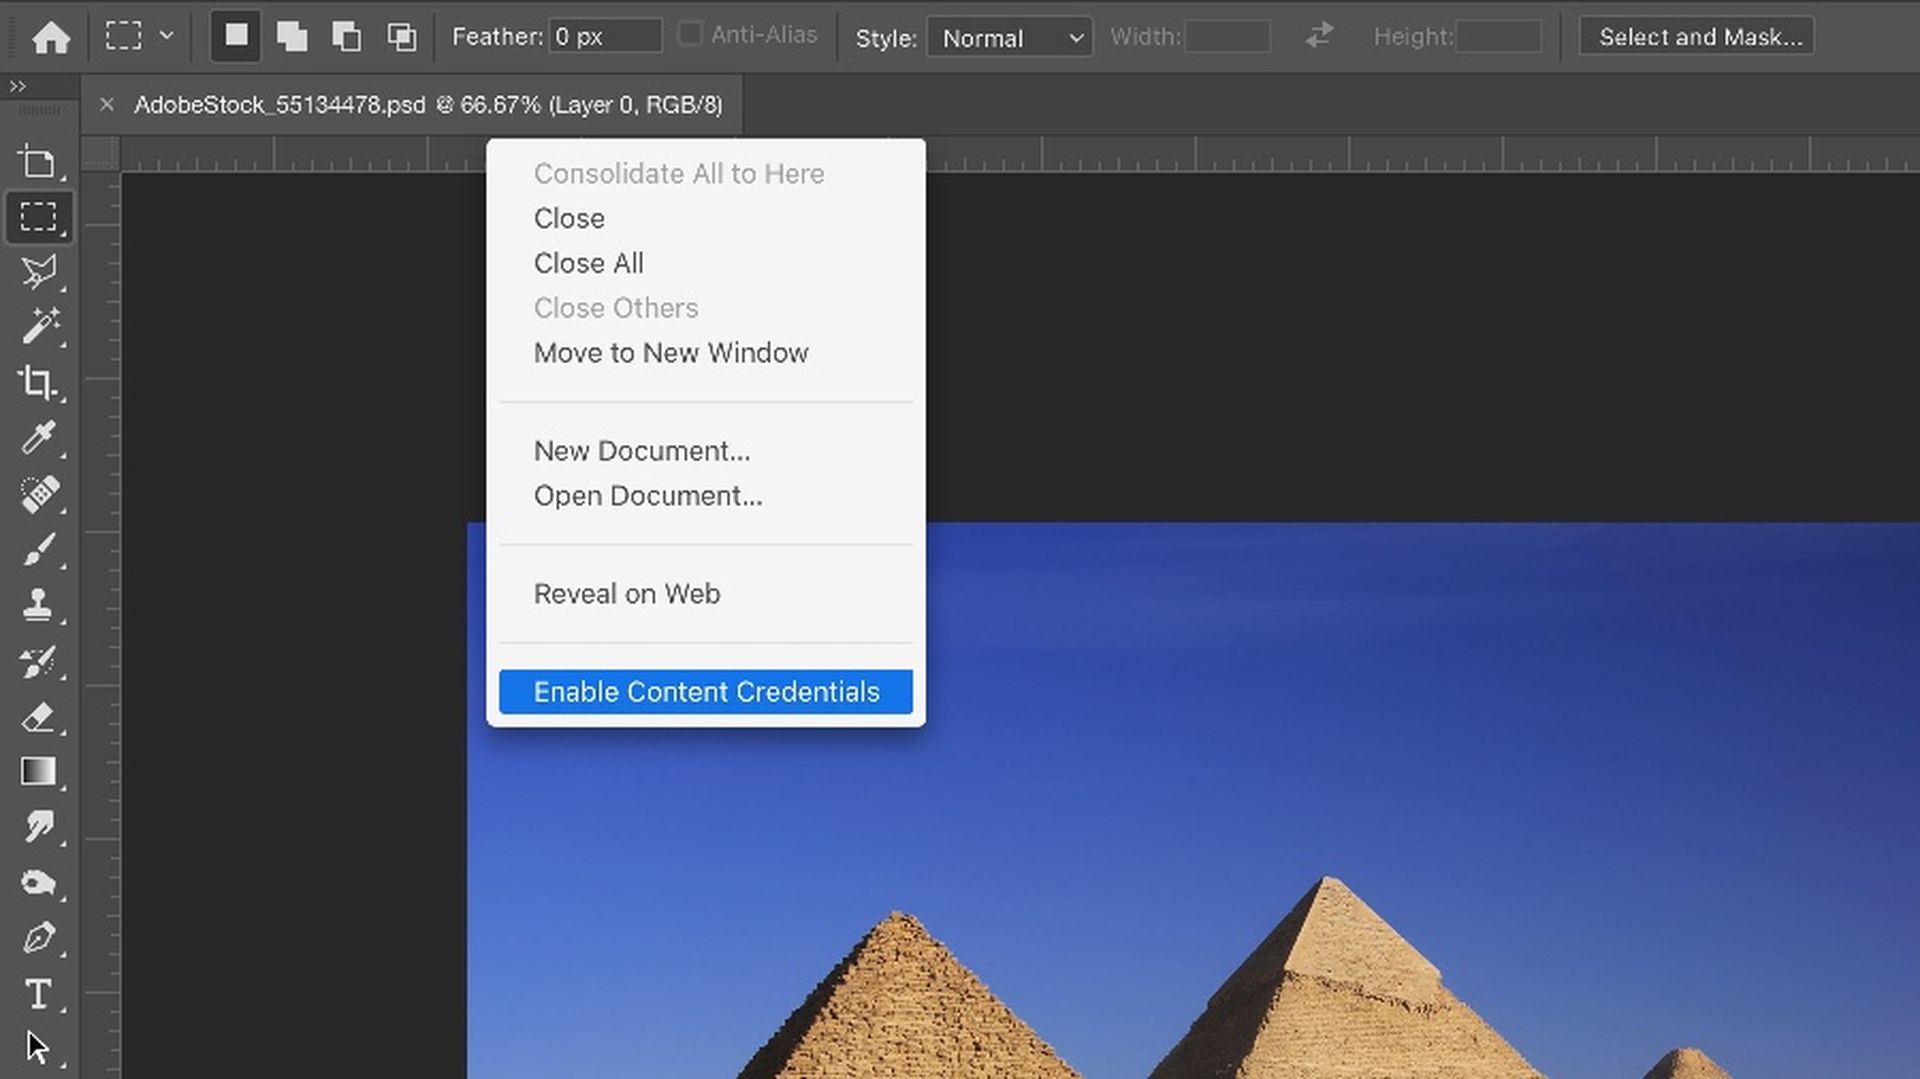 Ontdek hoe je Adobe Content Credentials kunt gebruiken: digitale vingerafdrukken die onthullen wie wat heeft gemaakt, hoe en met welke tools.